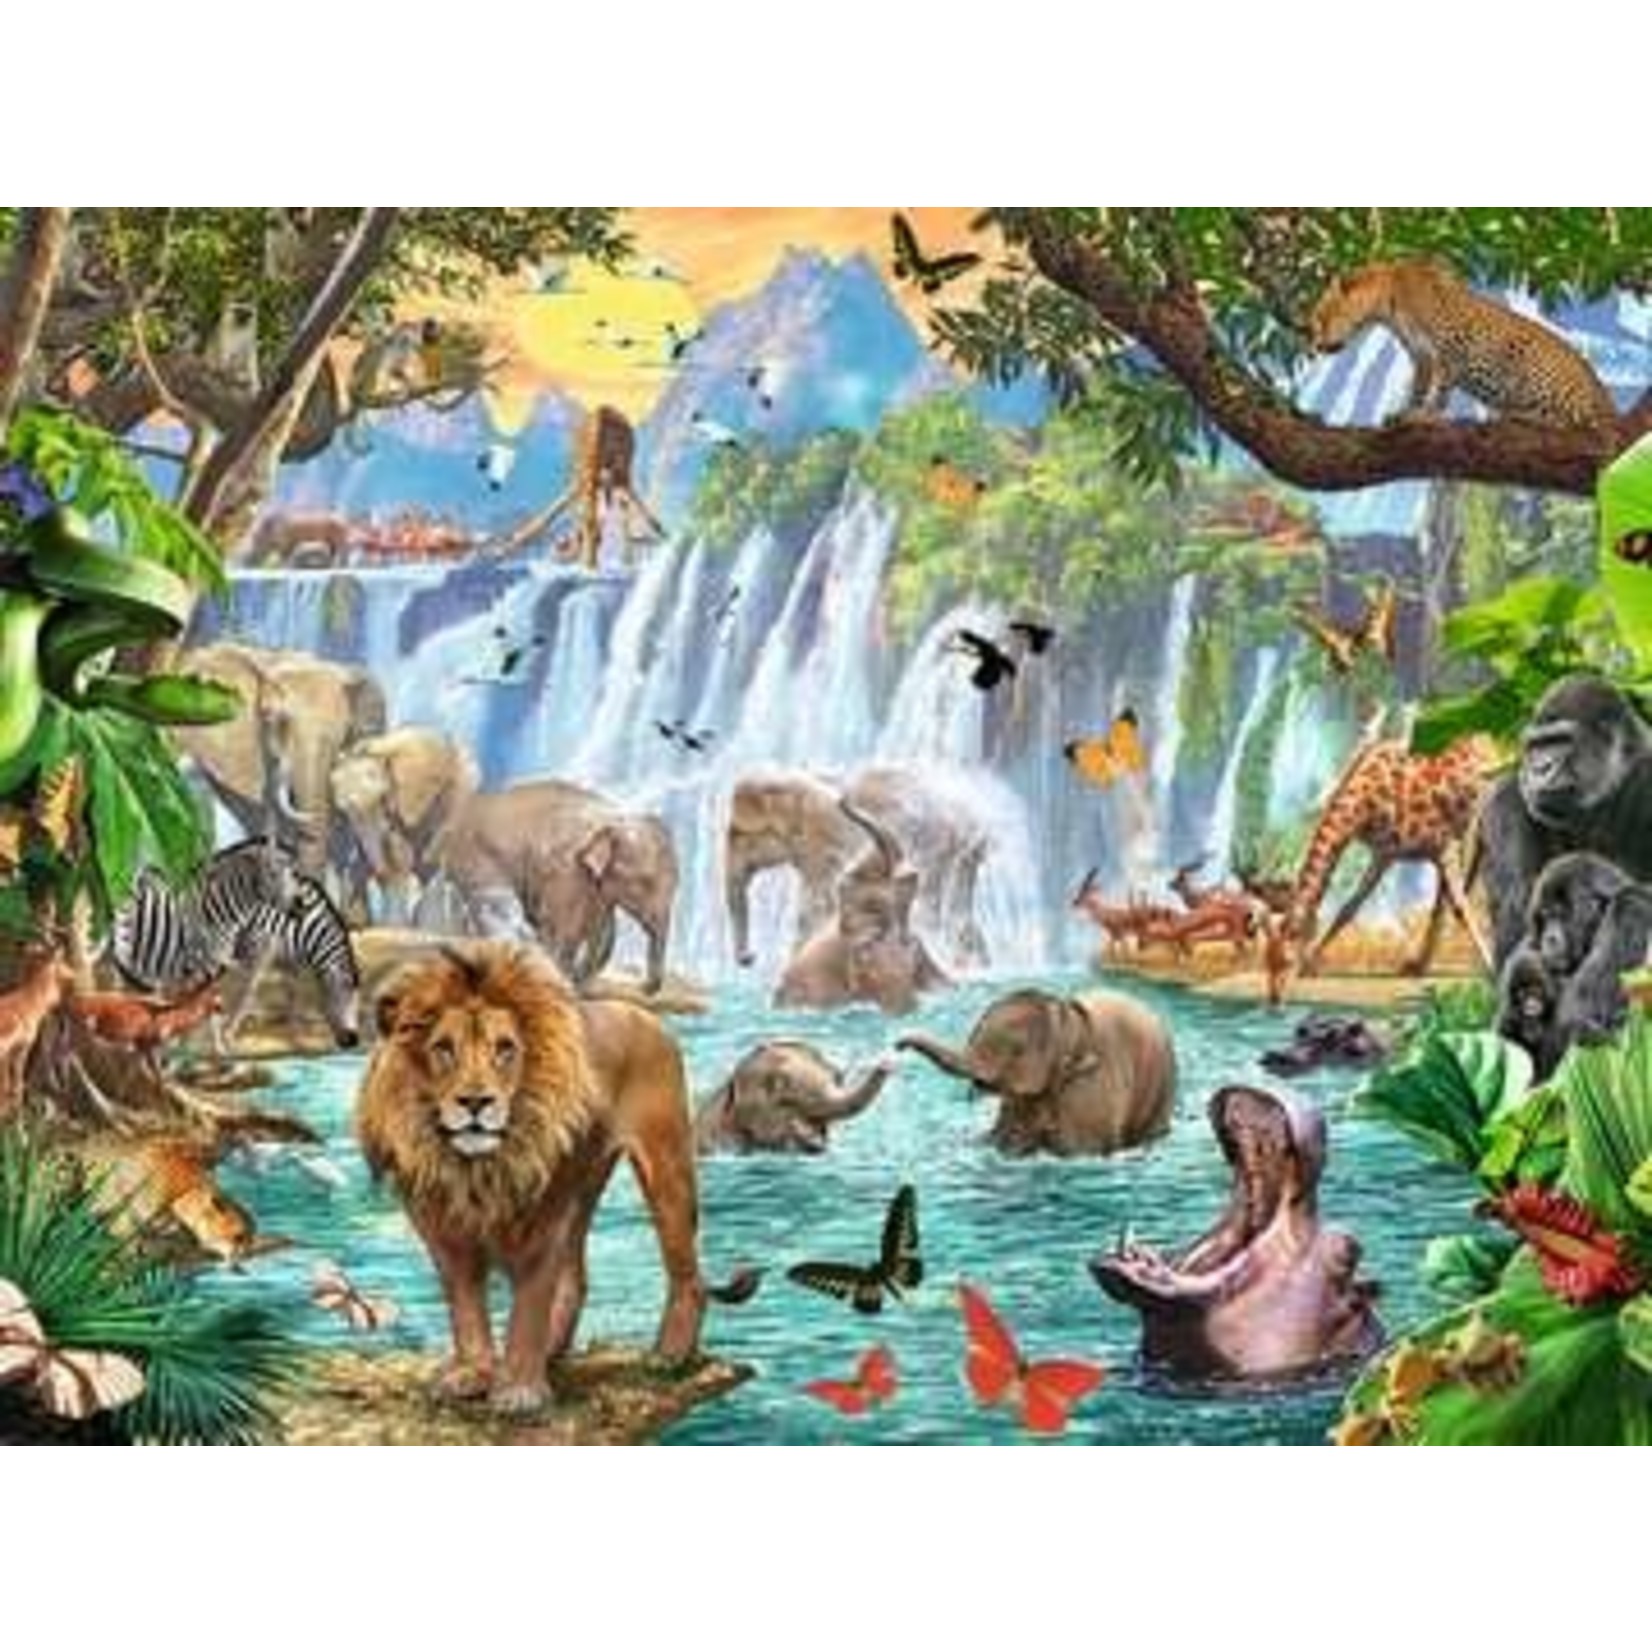 Waterfall Safari 1500 Piece Puzzle